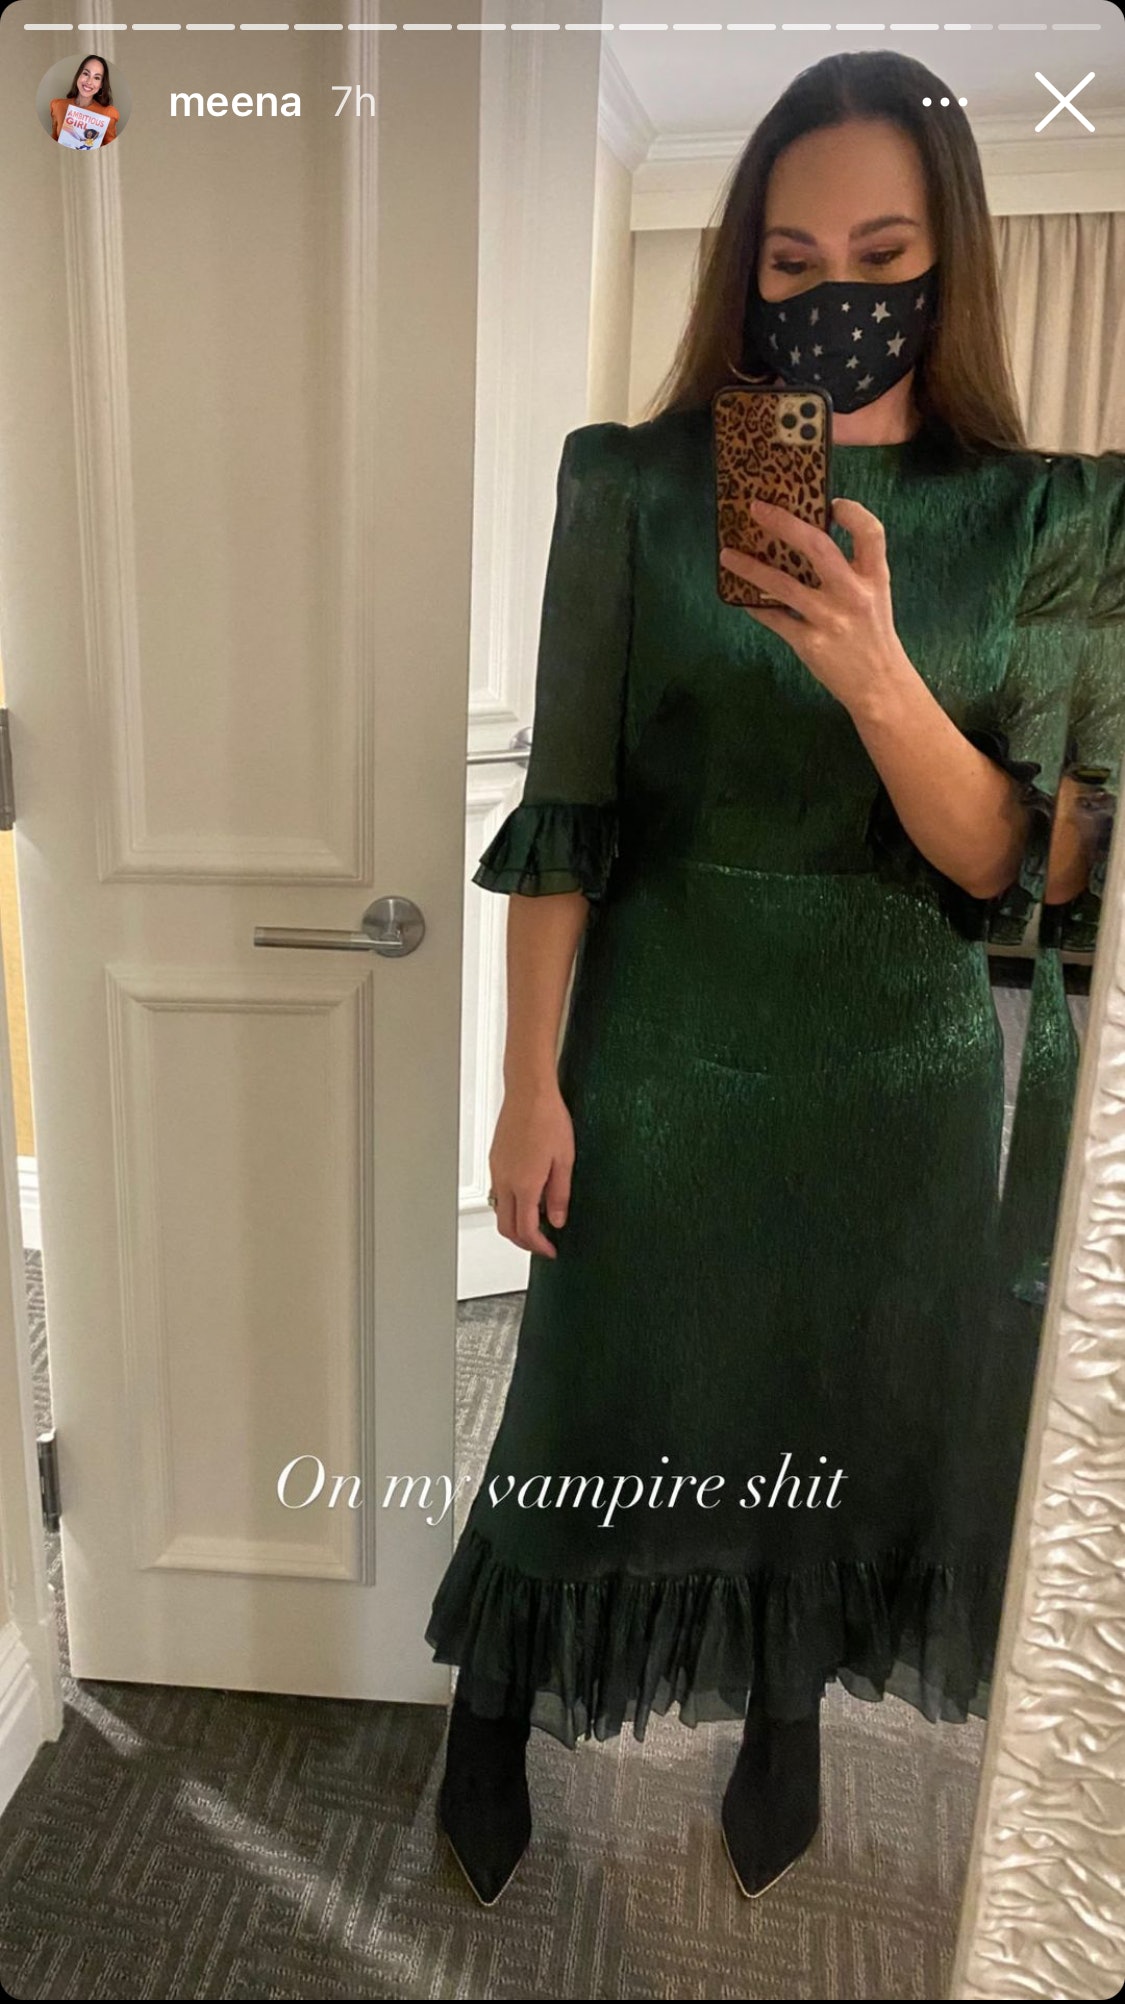 Kate Middleton e Meena Harris amano entrambe il vestito della moglie di questo vampiro chic